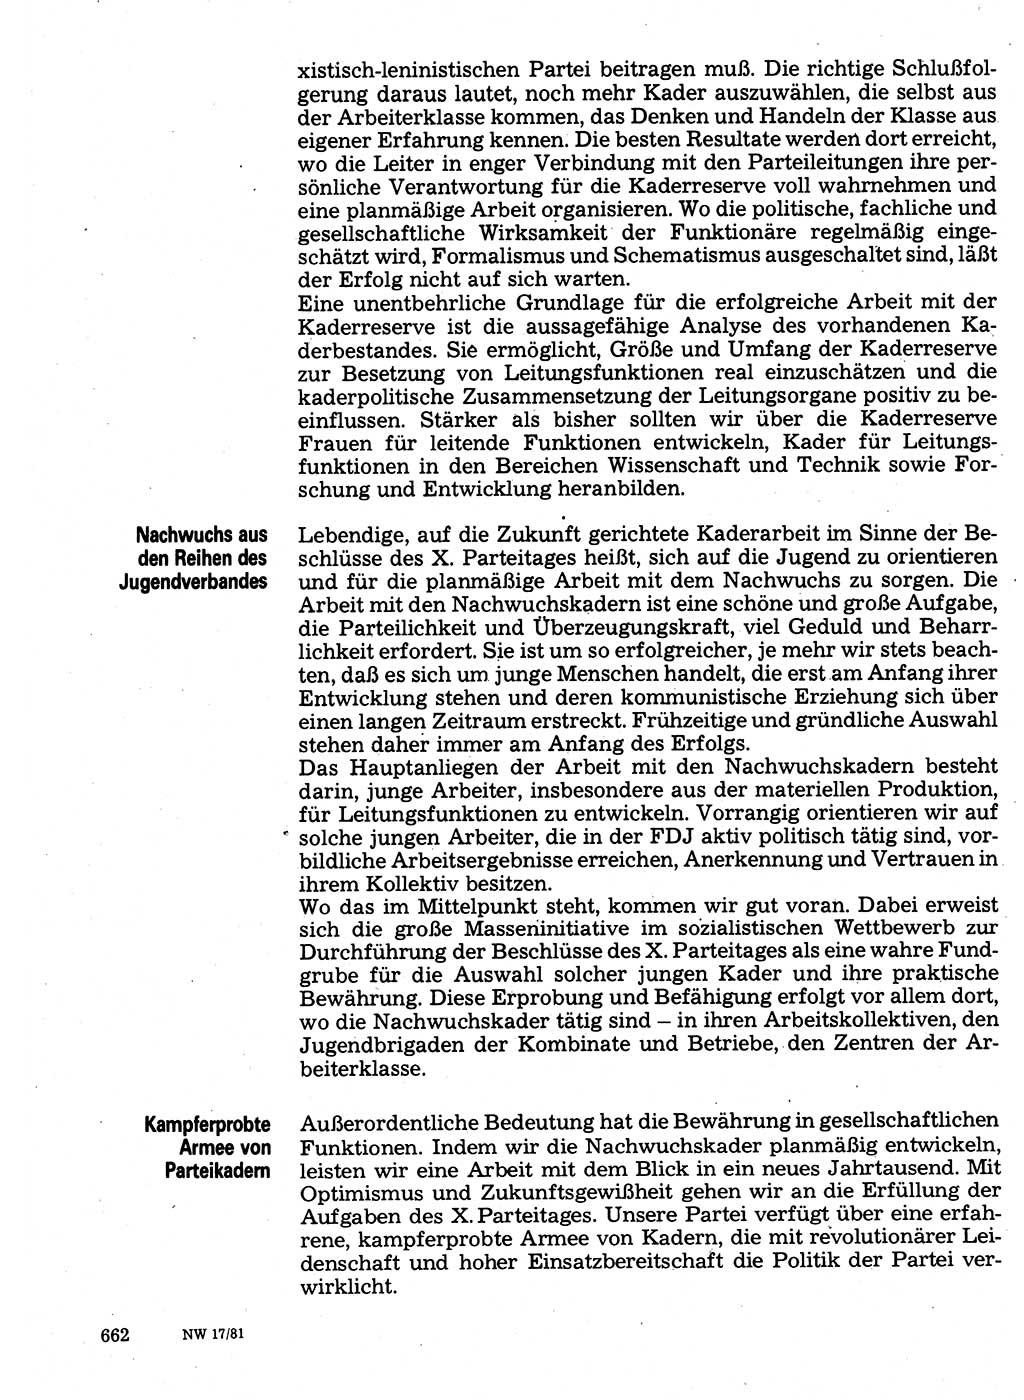 Neuer Weg (NW), Organ des Zentralkomitees (ZK) der SED (Sozialistische Einheitspartei Deutschlands) für Fragen des Parteilebens, 36. Jahrgang [Deutsche Demokratische Republik (DDR)] 1981, Seite 662 (NW ZK SED DDR 1981, S. 662)